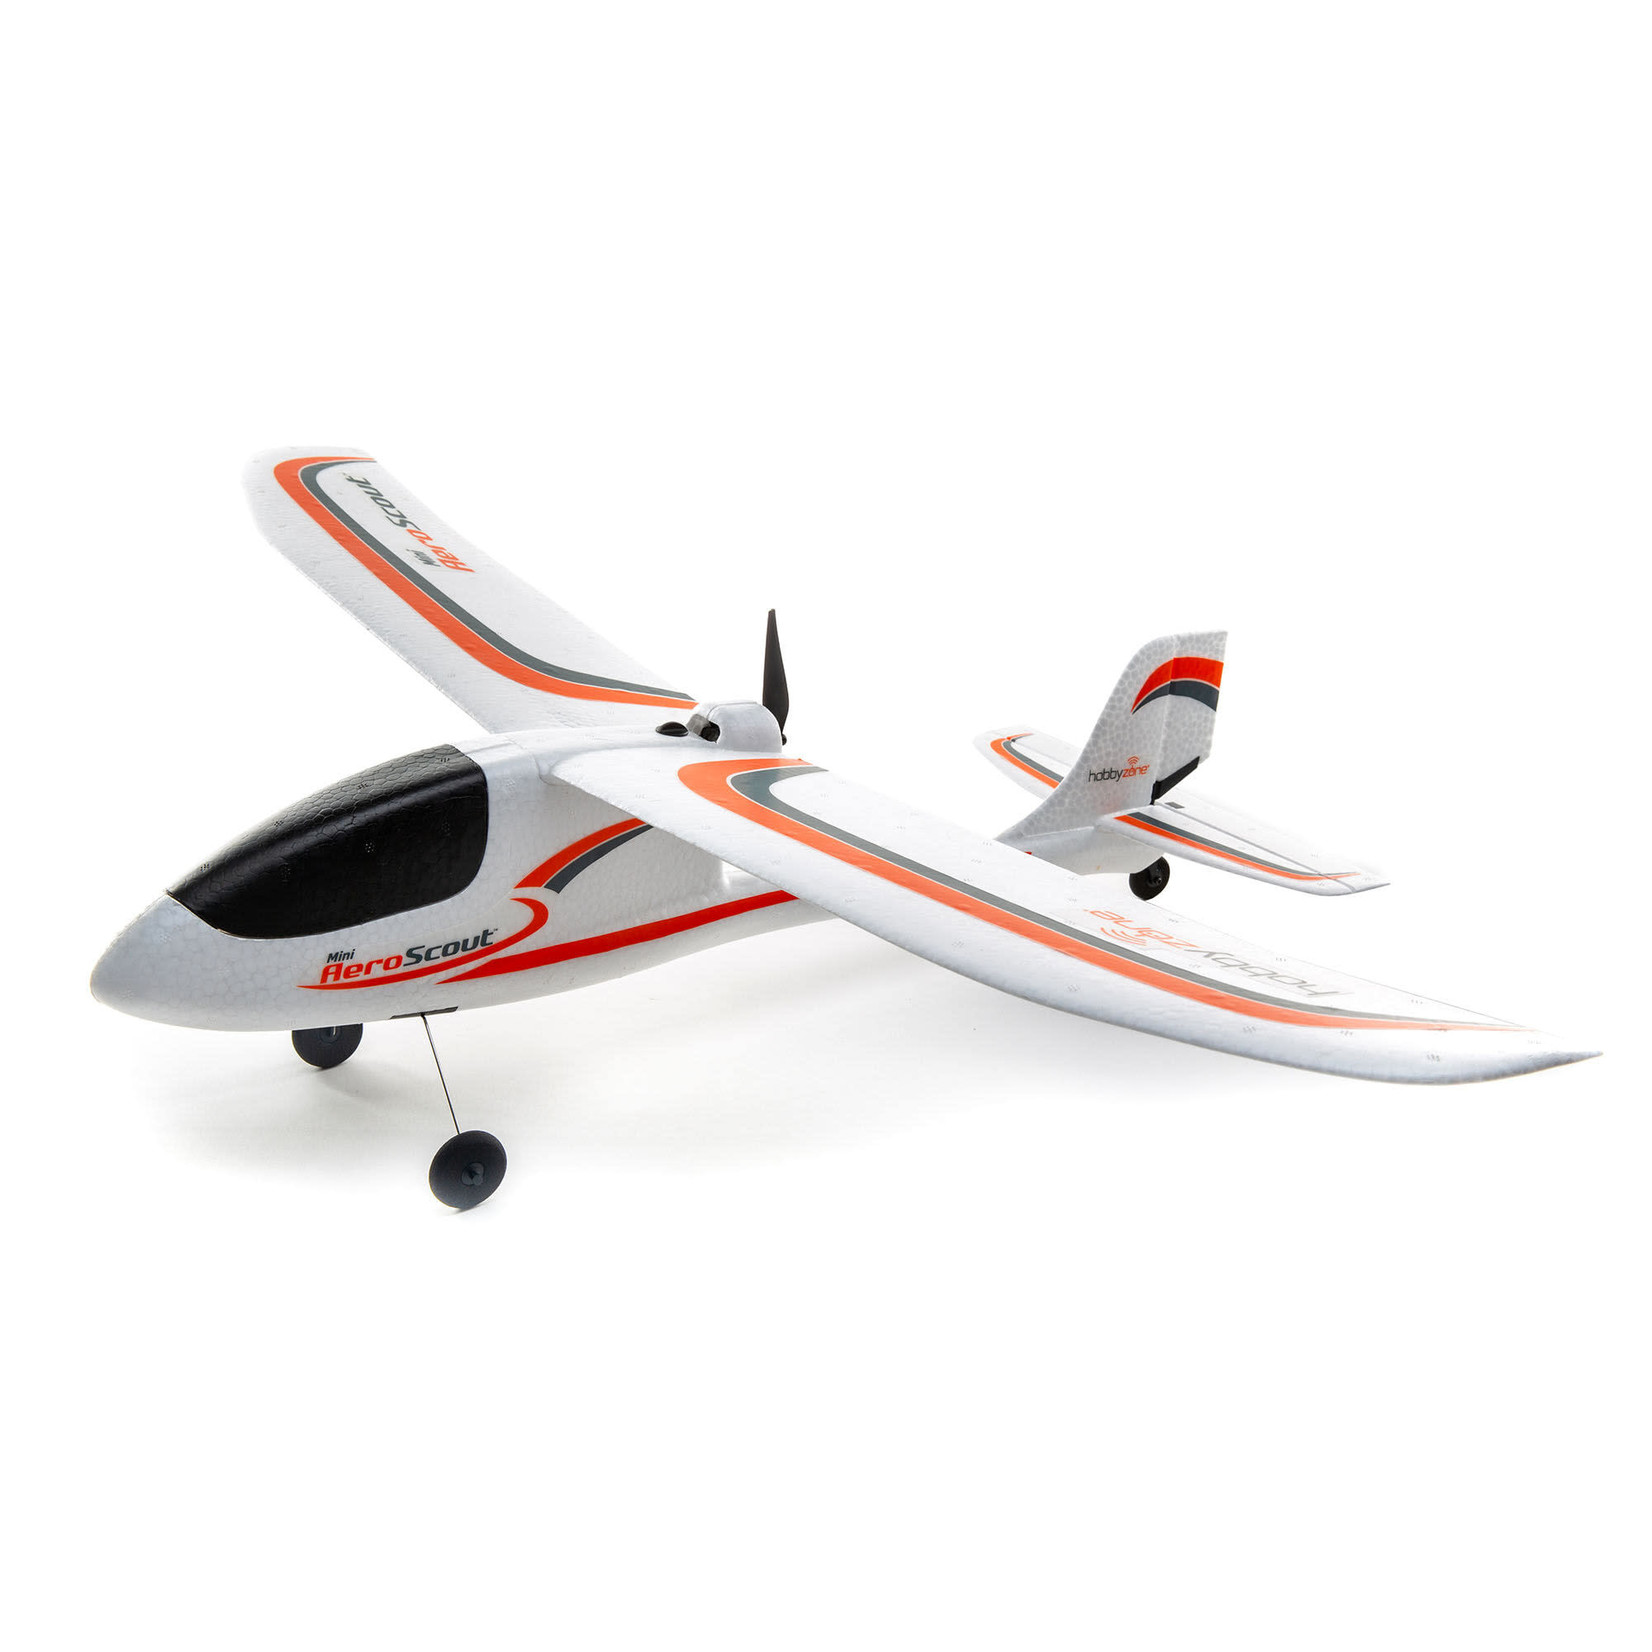 HobbyZone HobbyZone Mini AeroScout RTF Electric Airplane (770mm) #HBZ5700